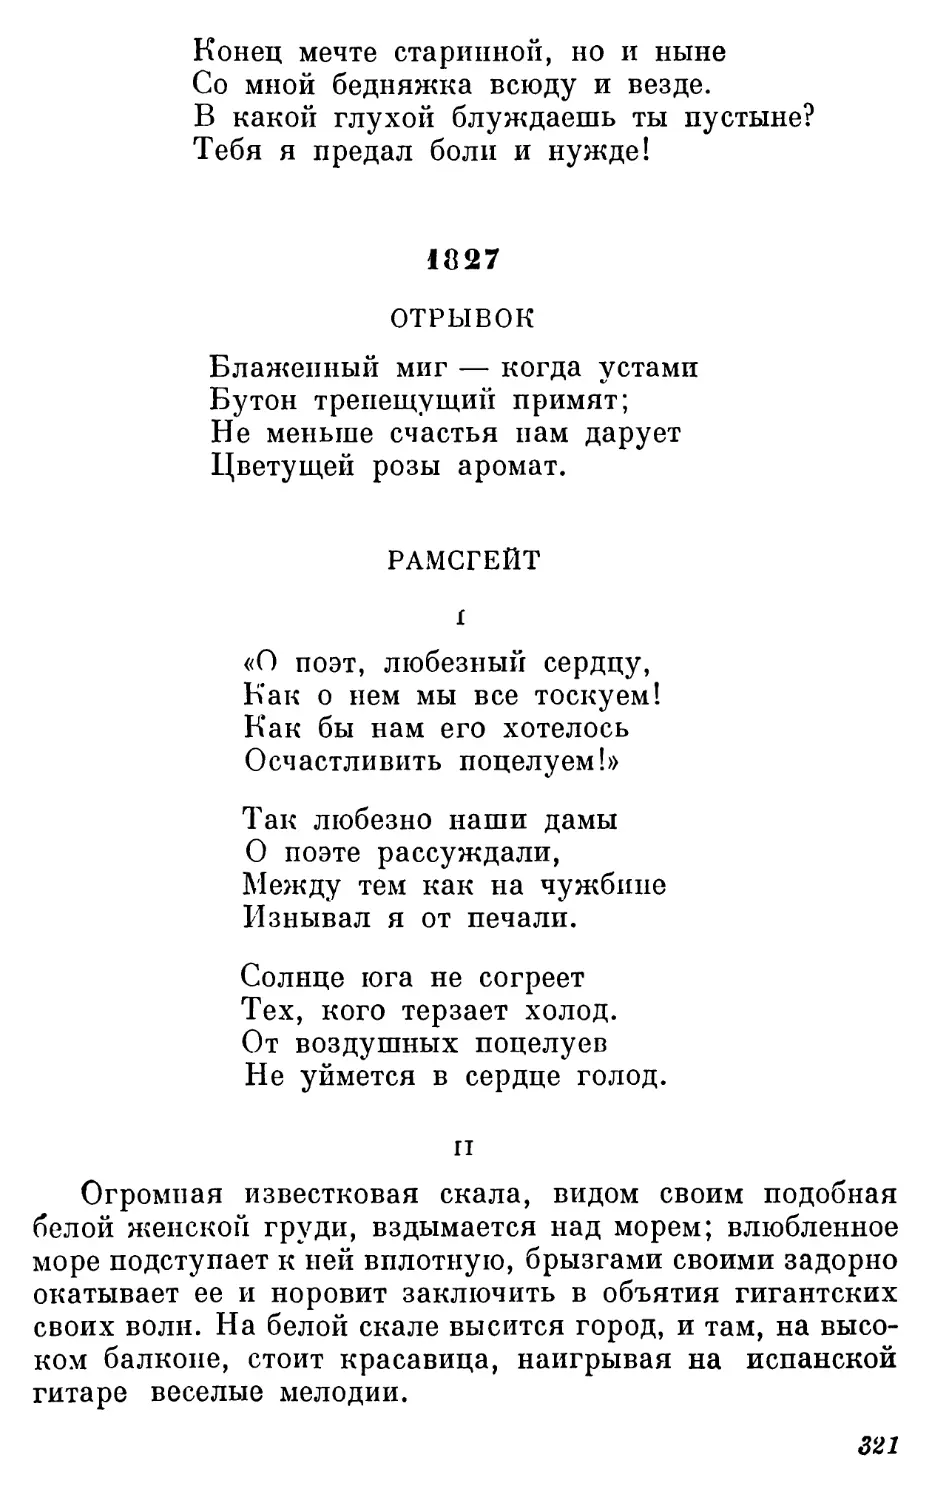 1827
Рамсгейт. Перевод В. Зоргенфрея